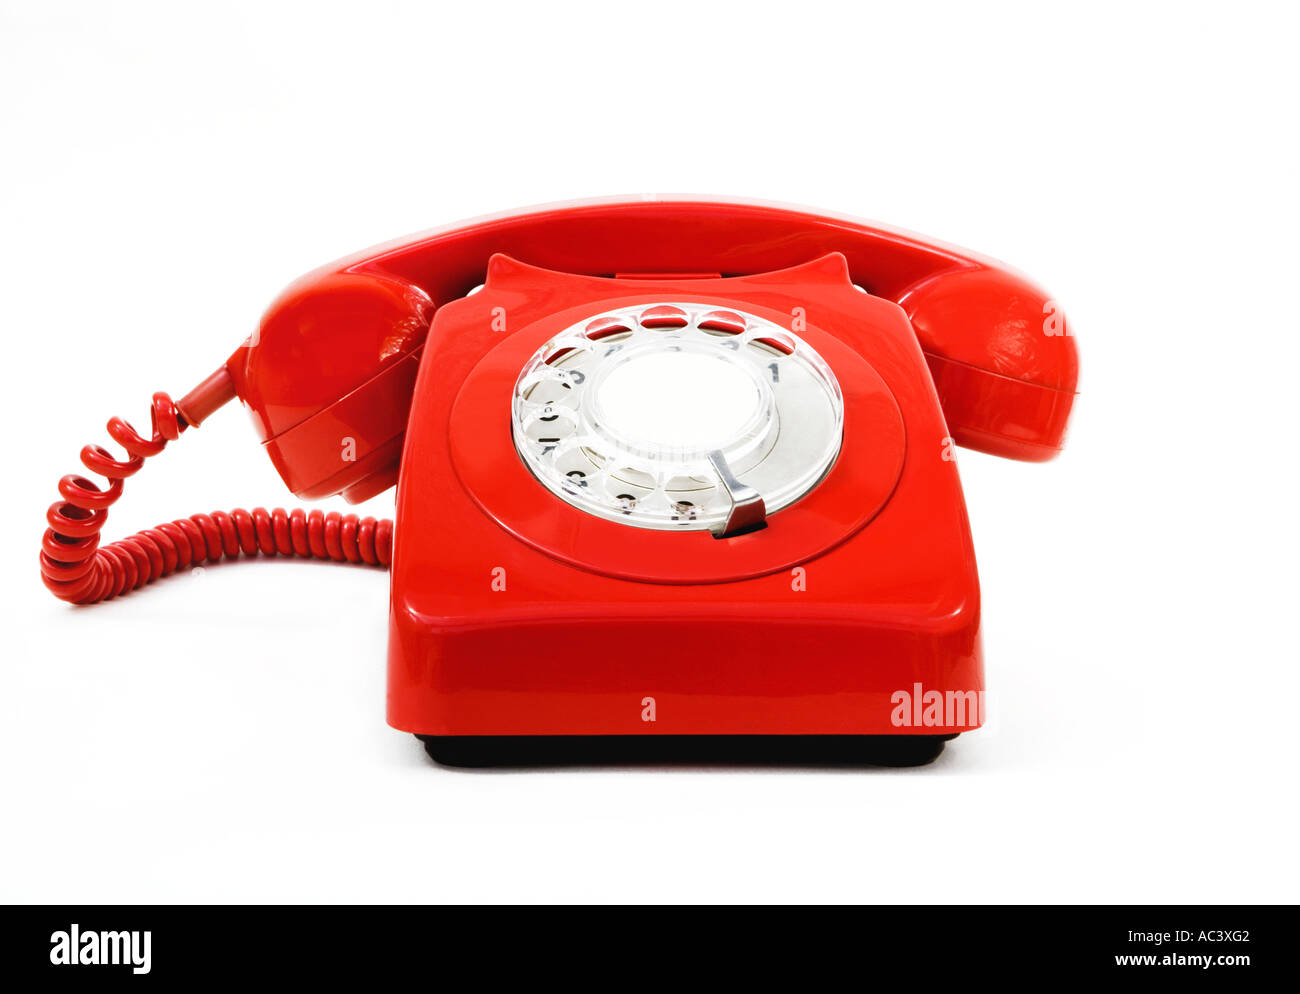 Classic vintage téléphone rouge Banque D'Images